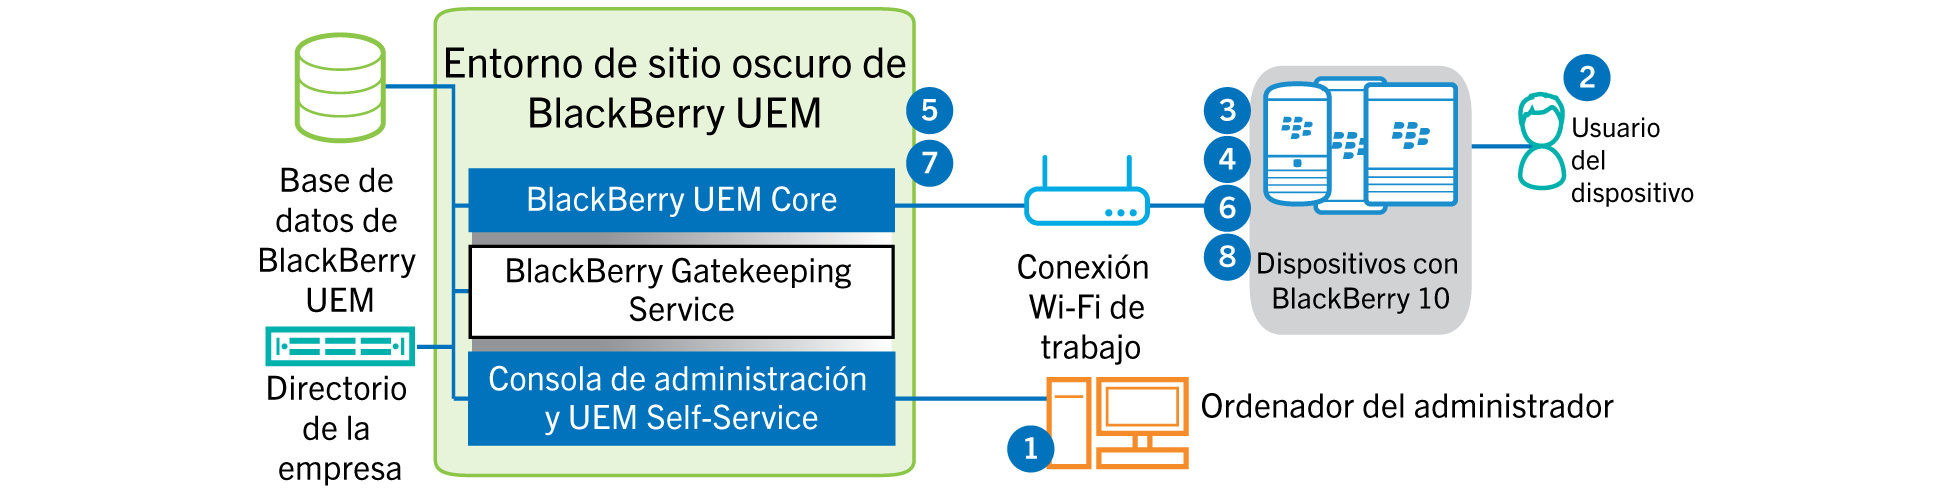 Este diagrama muestra los pasos y los componentes de BlackBerry UEM que se utilizan a la hora de activar un dispositivo con BlackBerry 10 en un entorno de sitio oscuro.